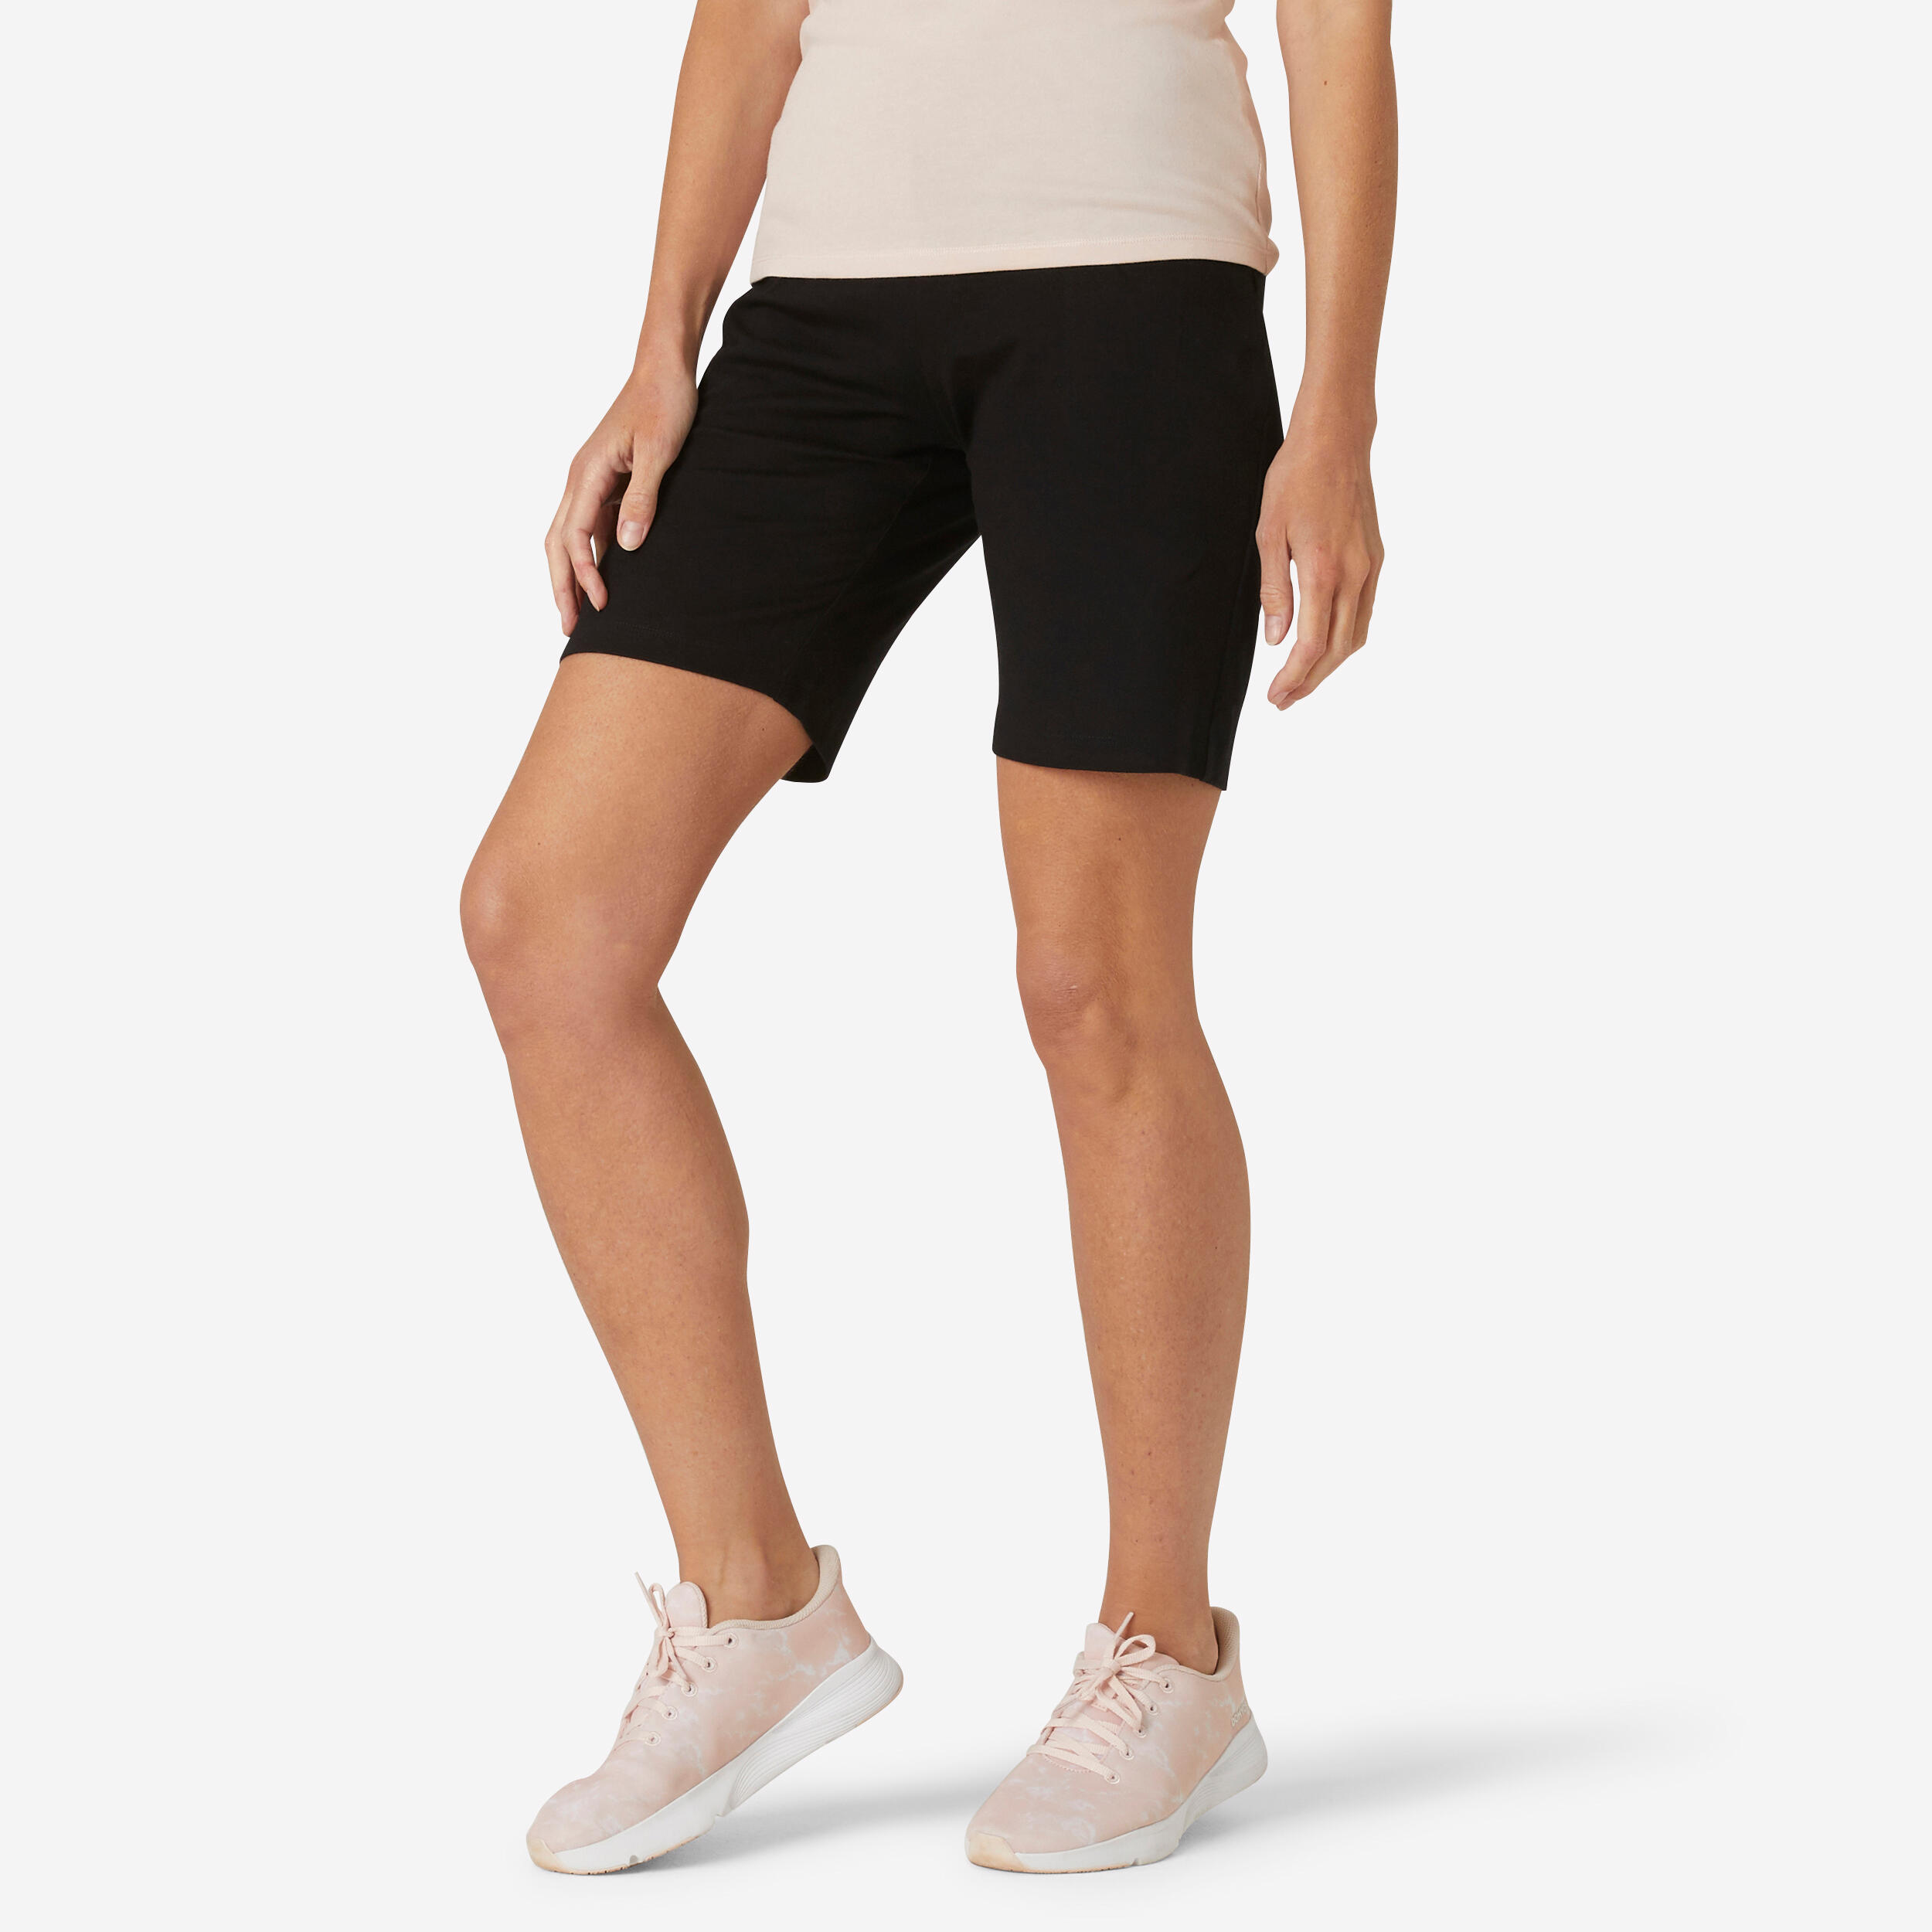 Black Cotton Biker Shorts  Workout shorts women, Biker shorts, Black biker  shorts